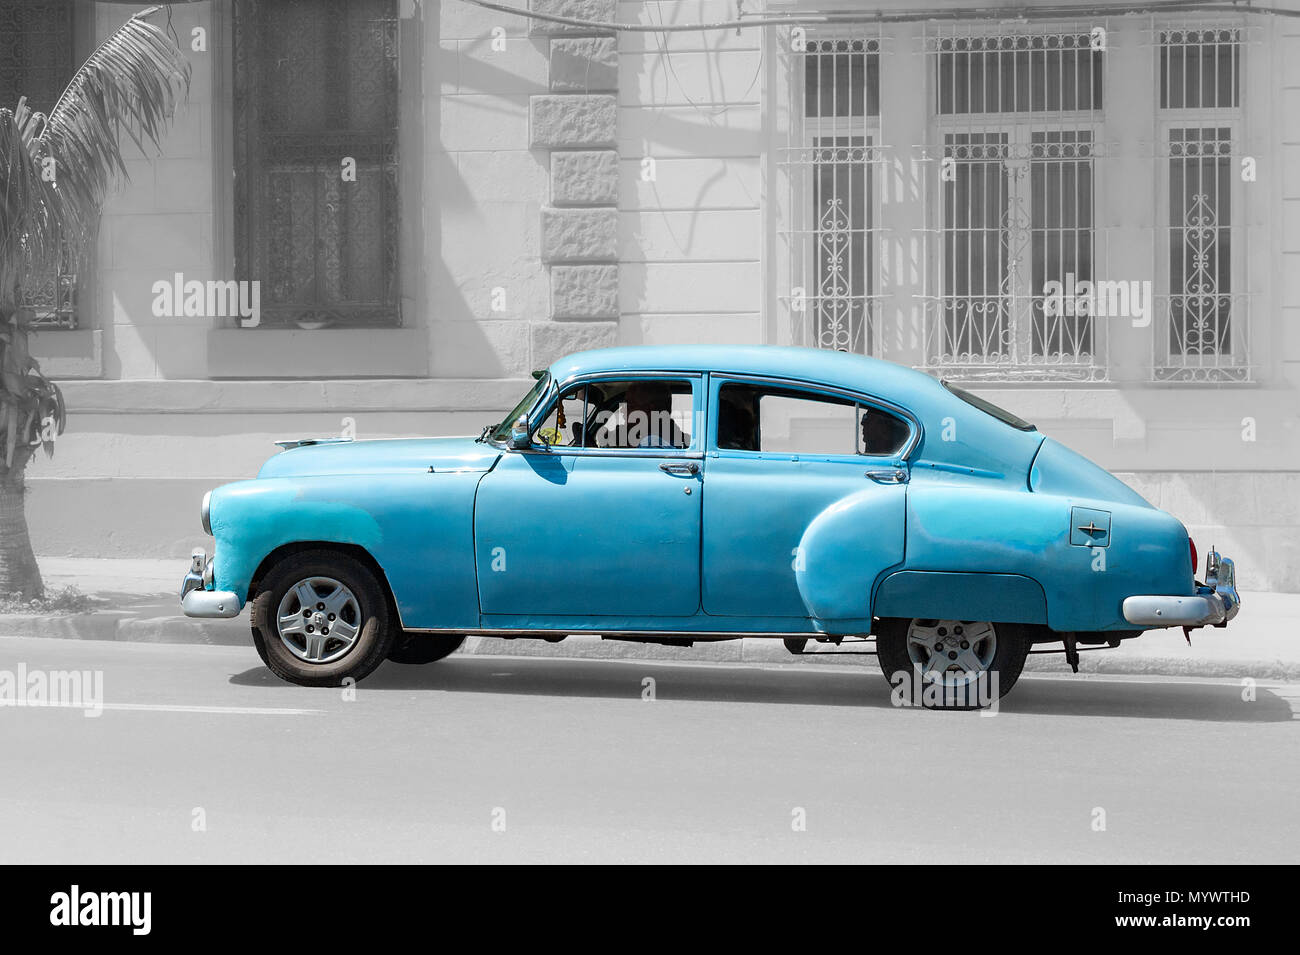 Vieille voiture américaine cruising rues de La Havane Cuba Banque D'Images